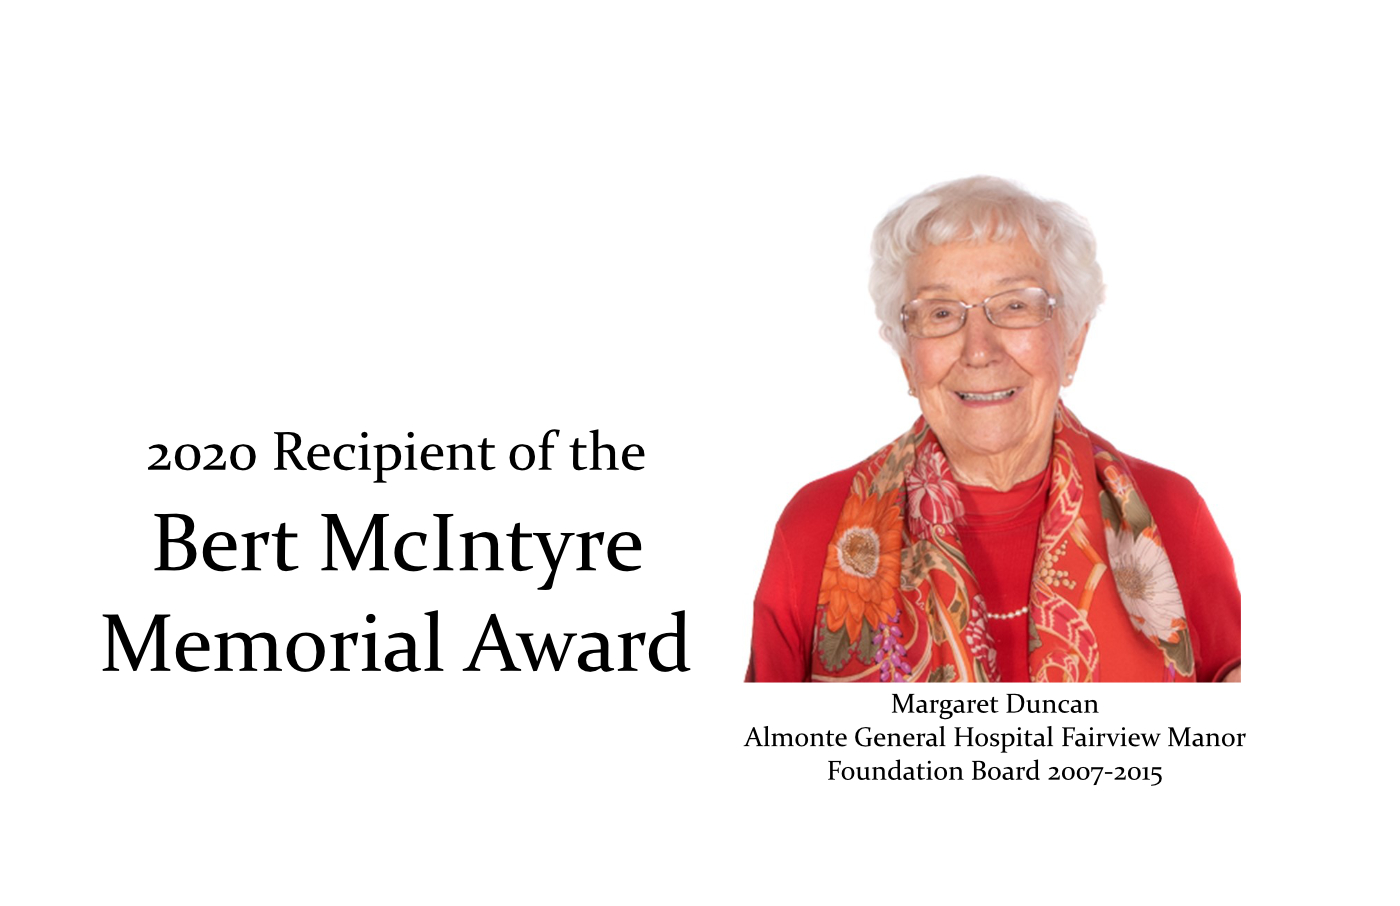 Meet Margaret Duncan, Recipient of the Bert McIntyre Memorial Award for Volunteerism